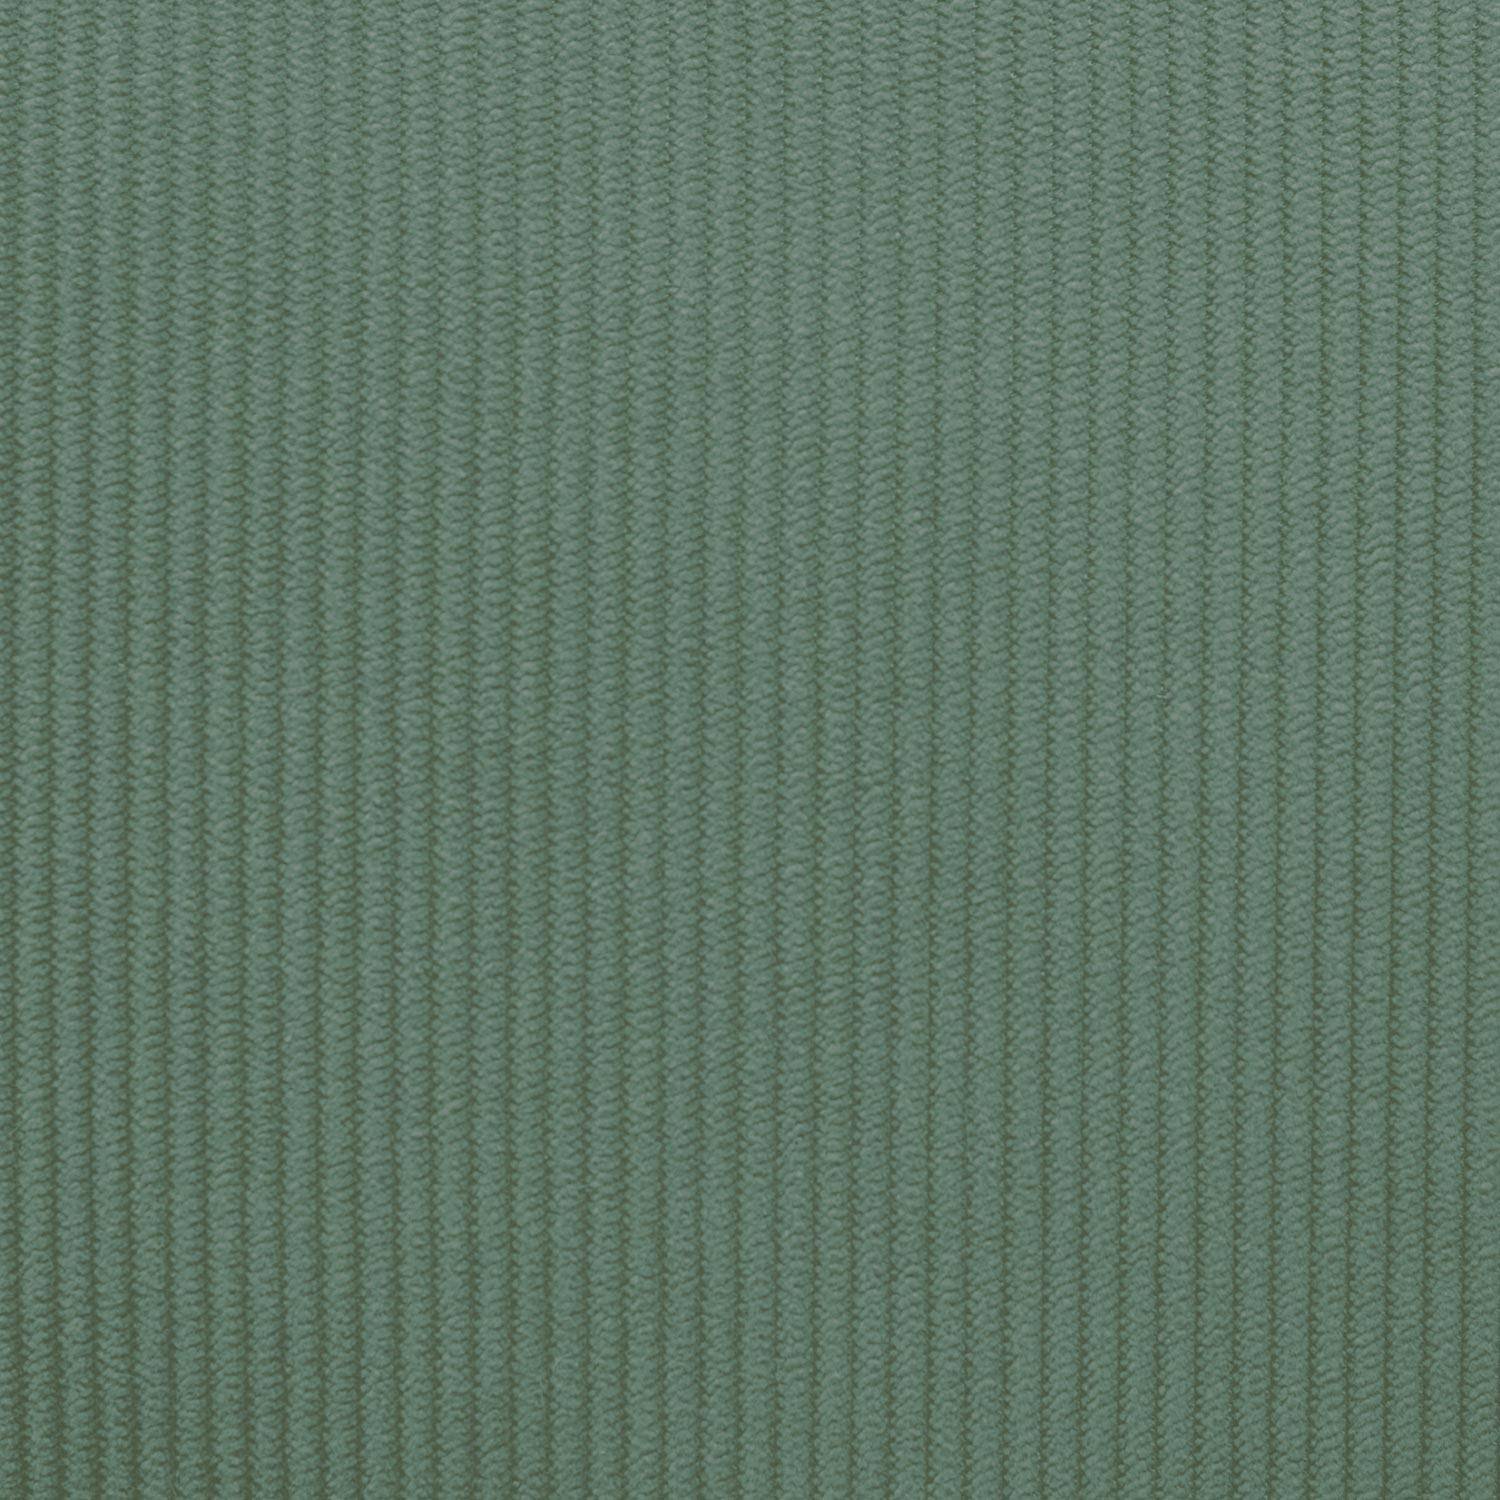 Kinderbankje in hout en celadon groen corduroy, Isak, 2-zits, B 84 x D 43,5 x H 50cm Photo8